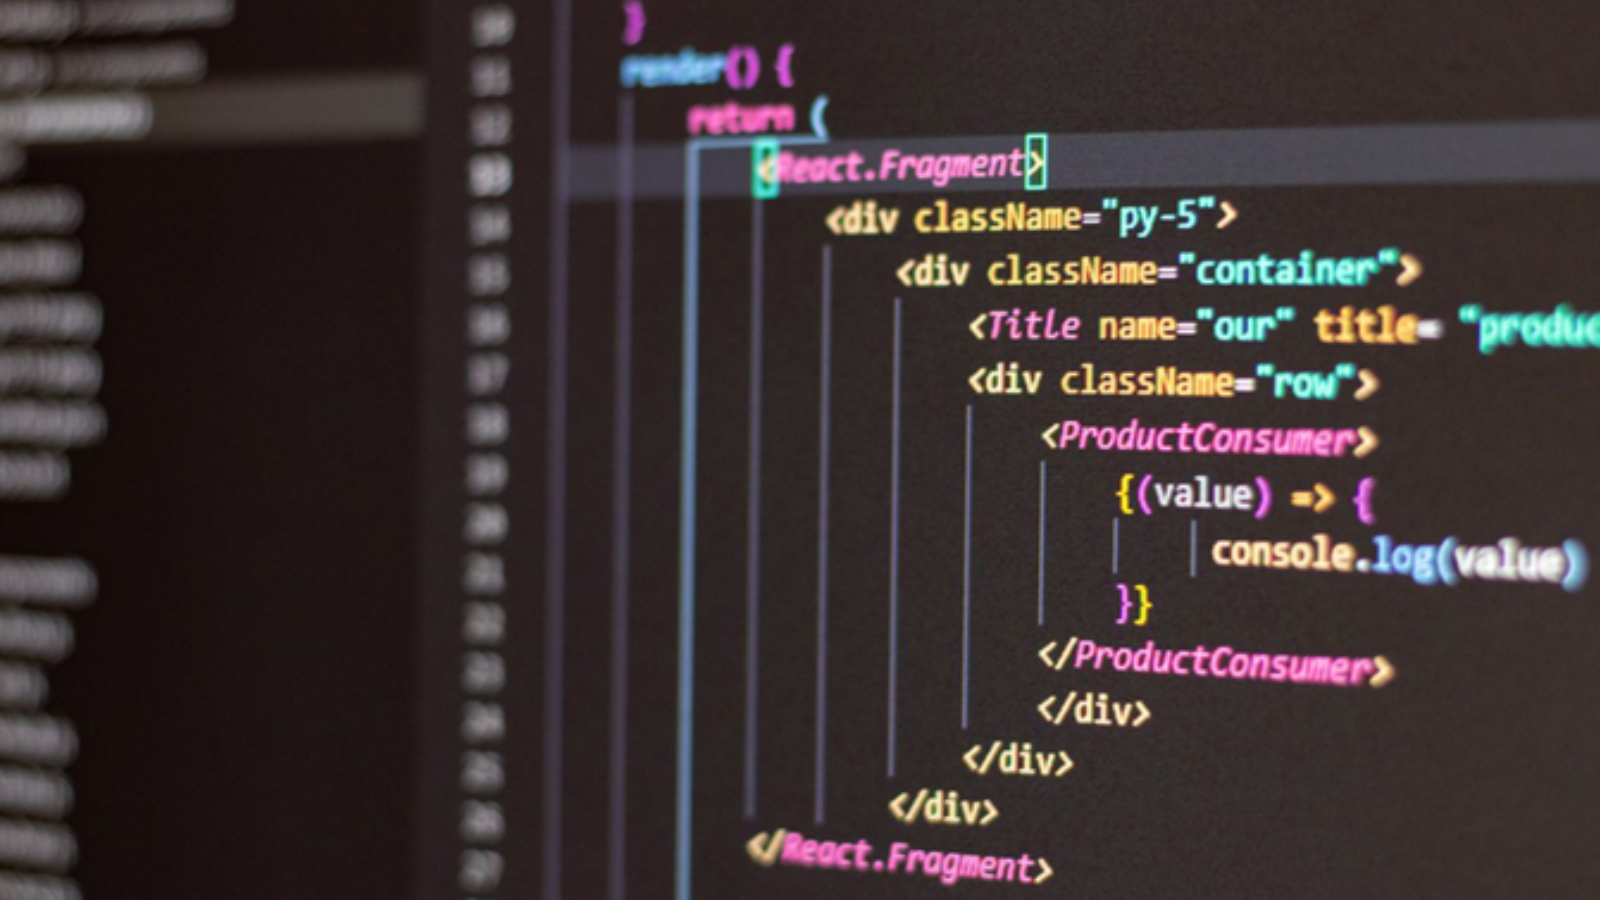 Imagen de la pantalla de un ordenador con códigos informáticos en diferentes colores